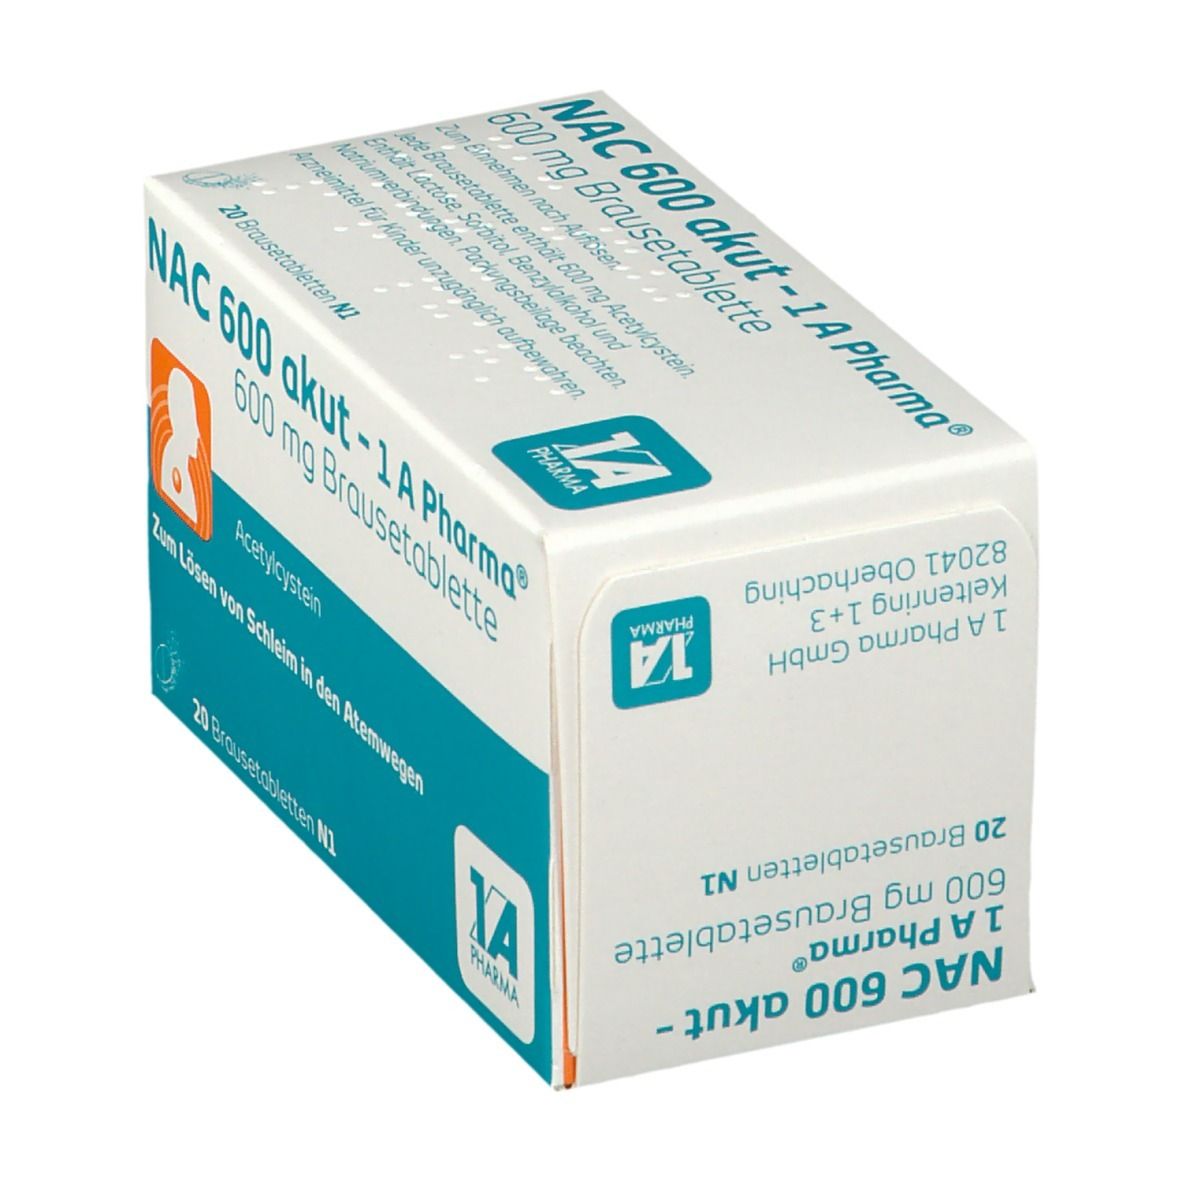 NAC 600 akut - 1A Pharma®